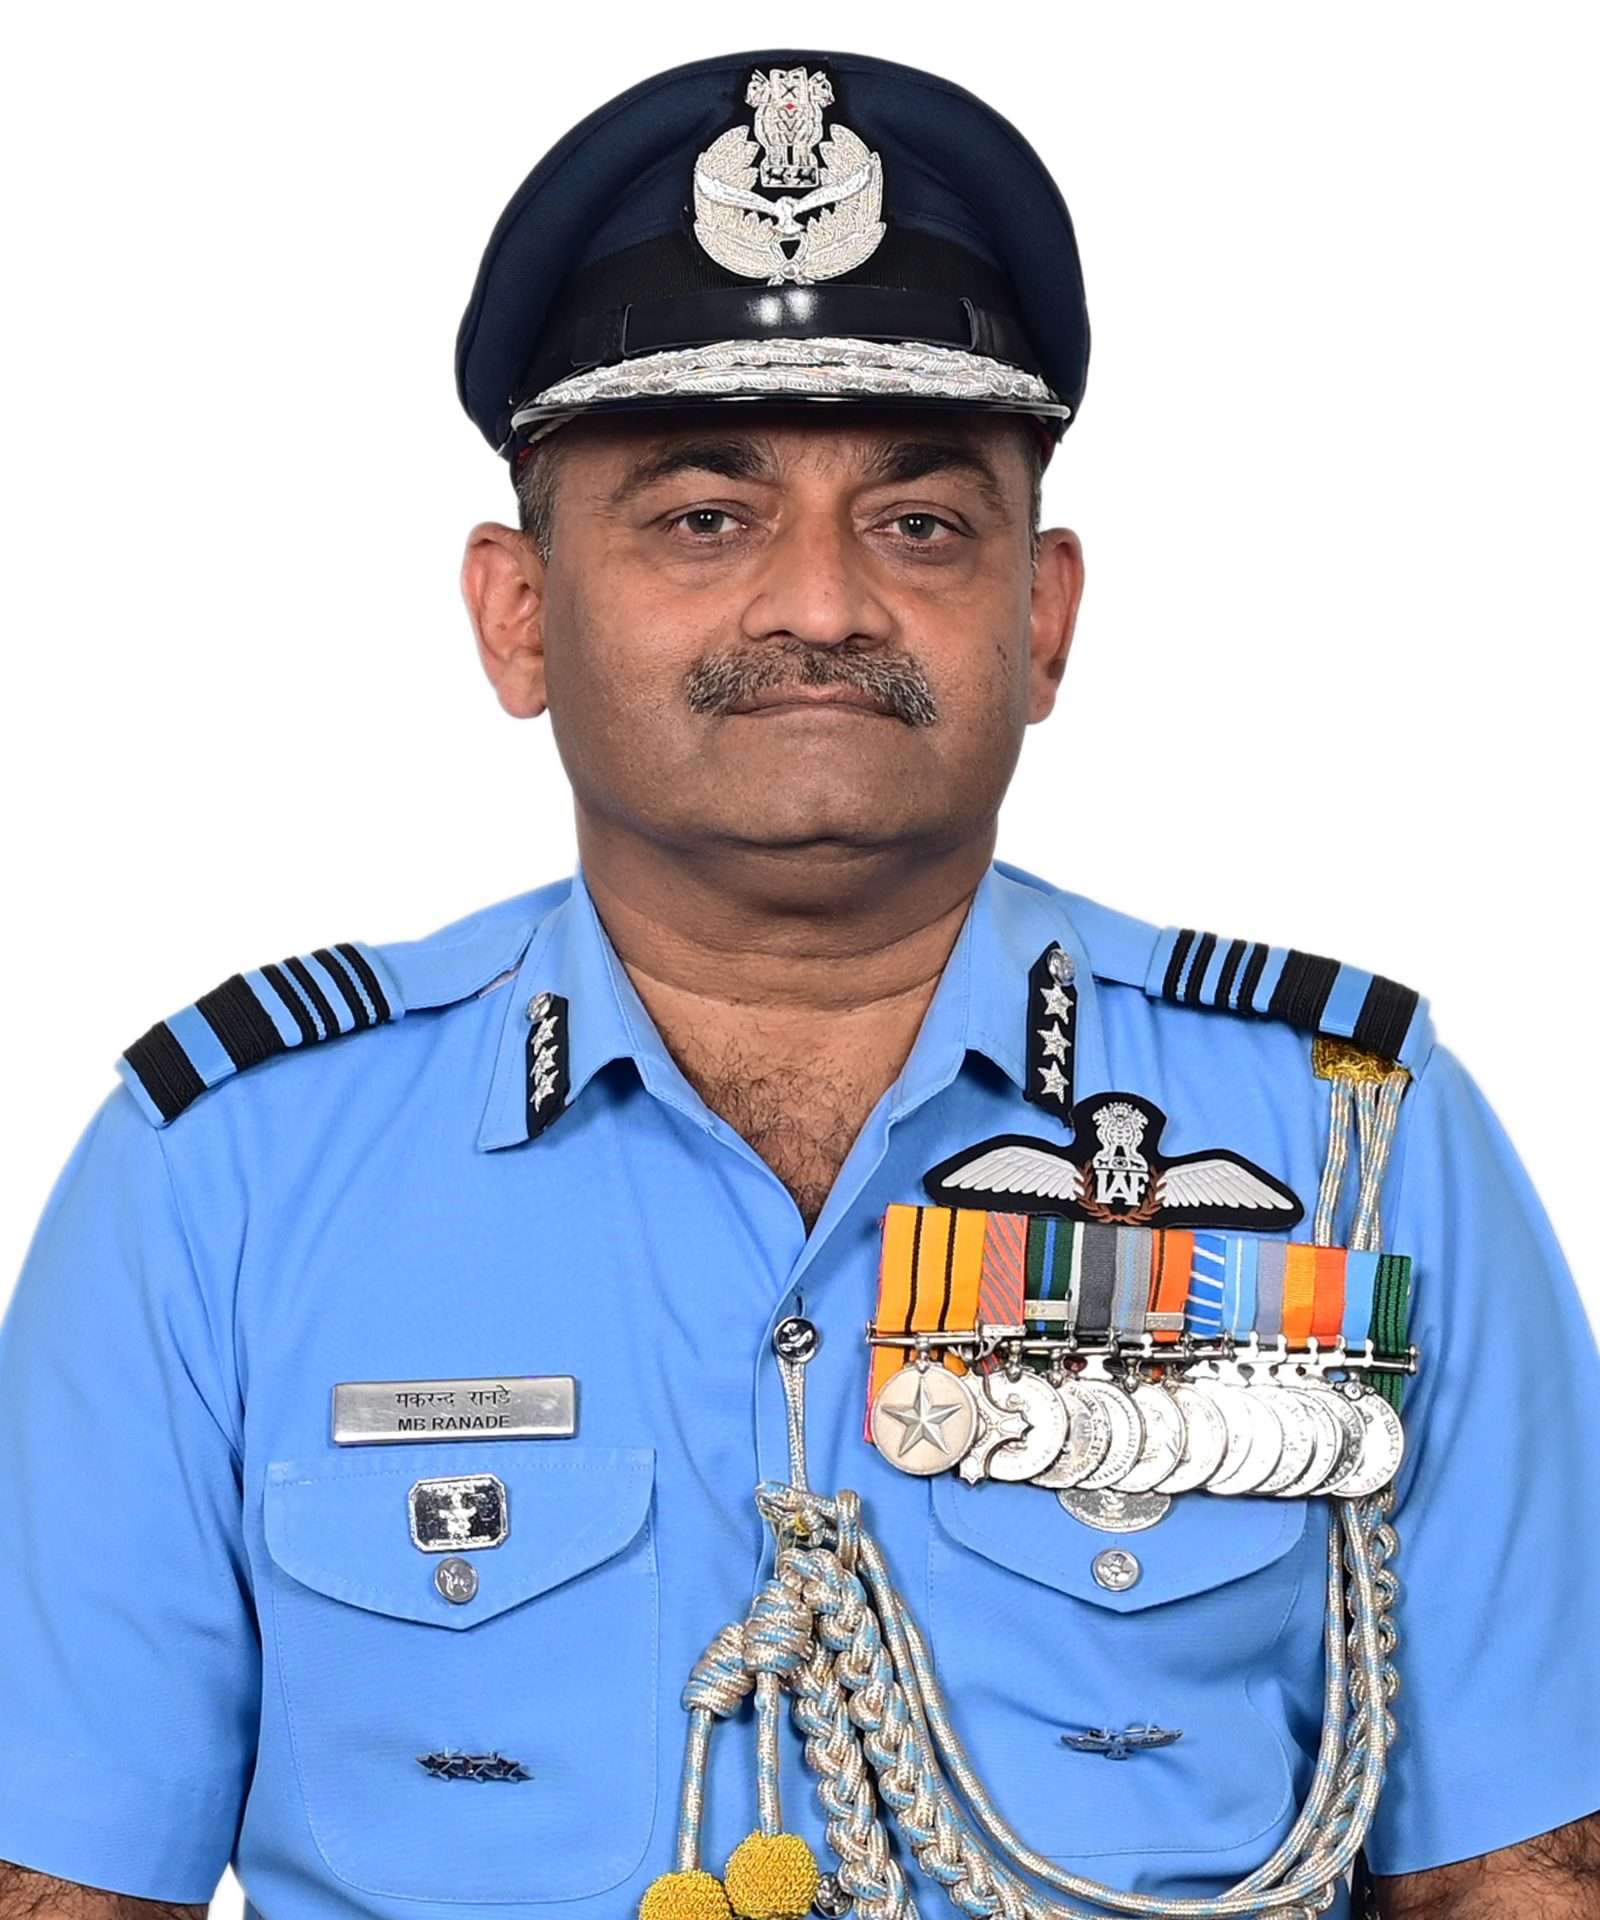 एअर मार्शल मकरंद रानडे यांनी नवी दिल्ली येथील हवाई दल मुख्यालयात निरीक्षण तसेच सुरक्षा विभागाचे महासंचालक म्हणून पदभार स्वीकारला